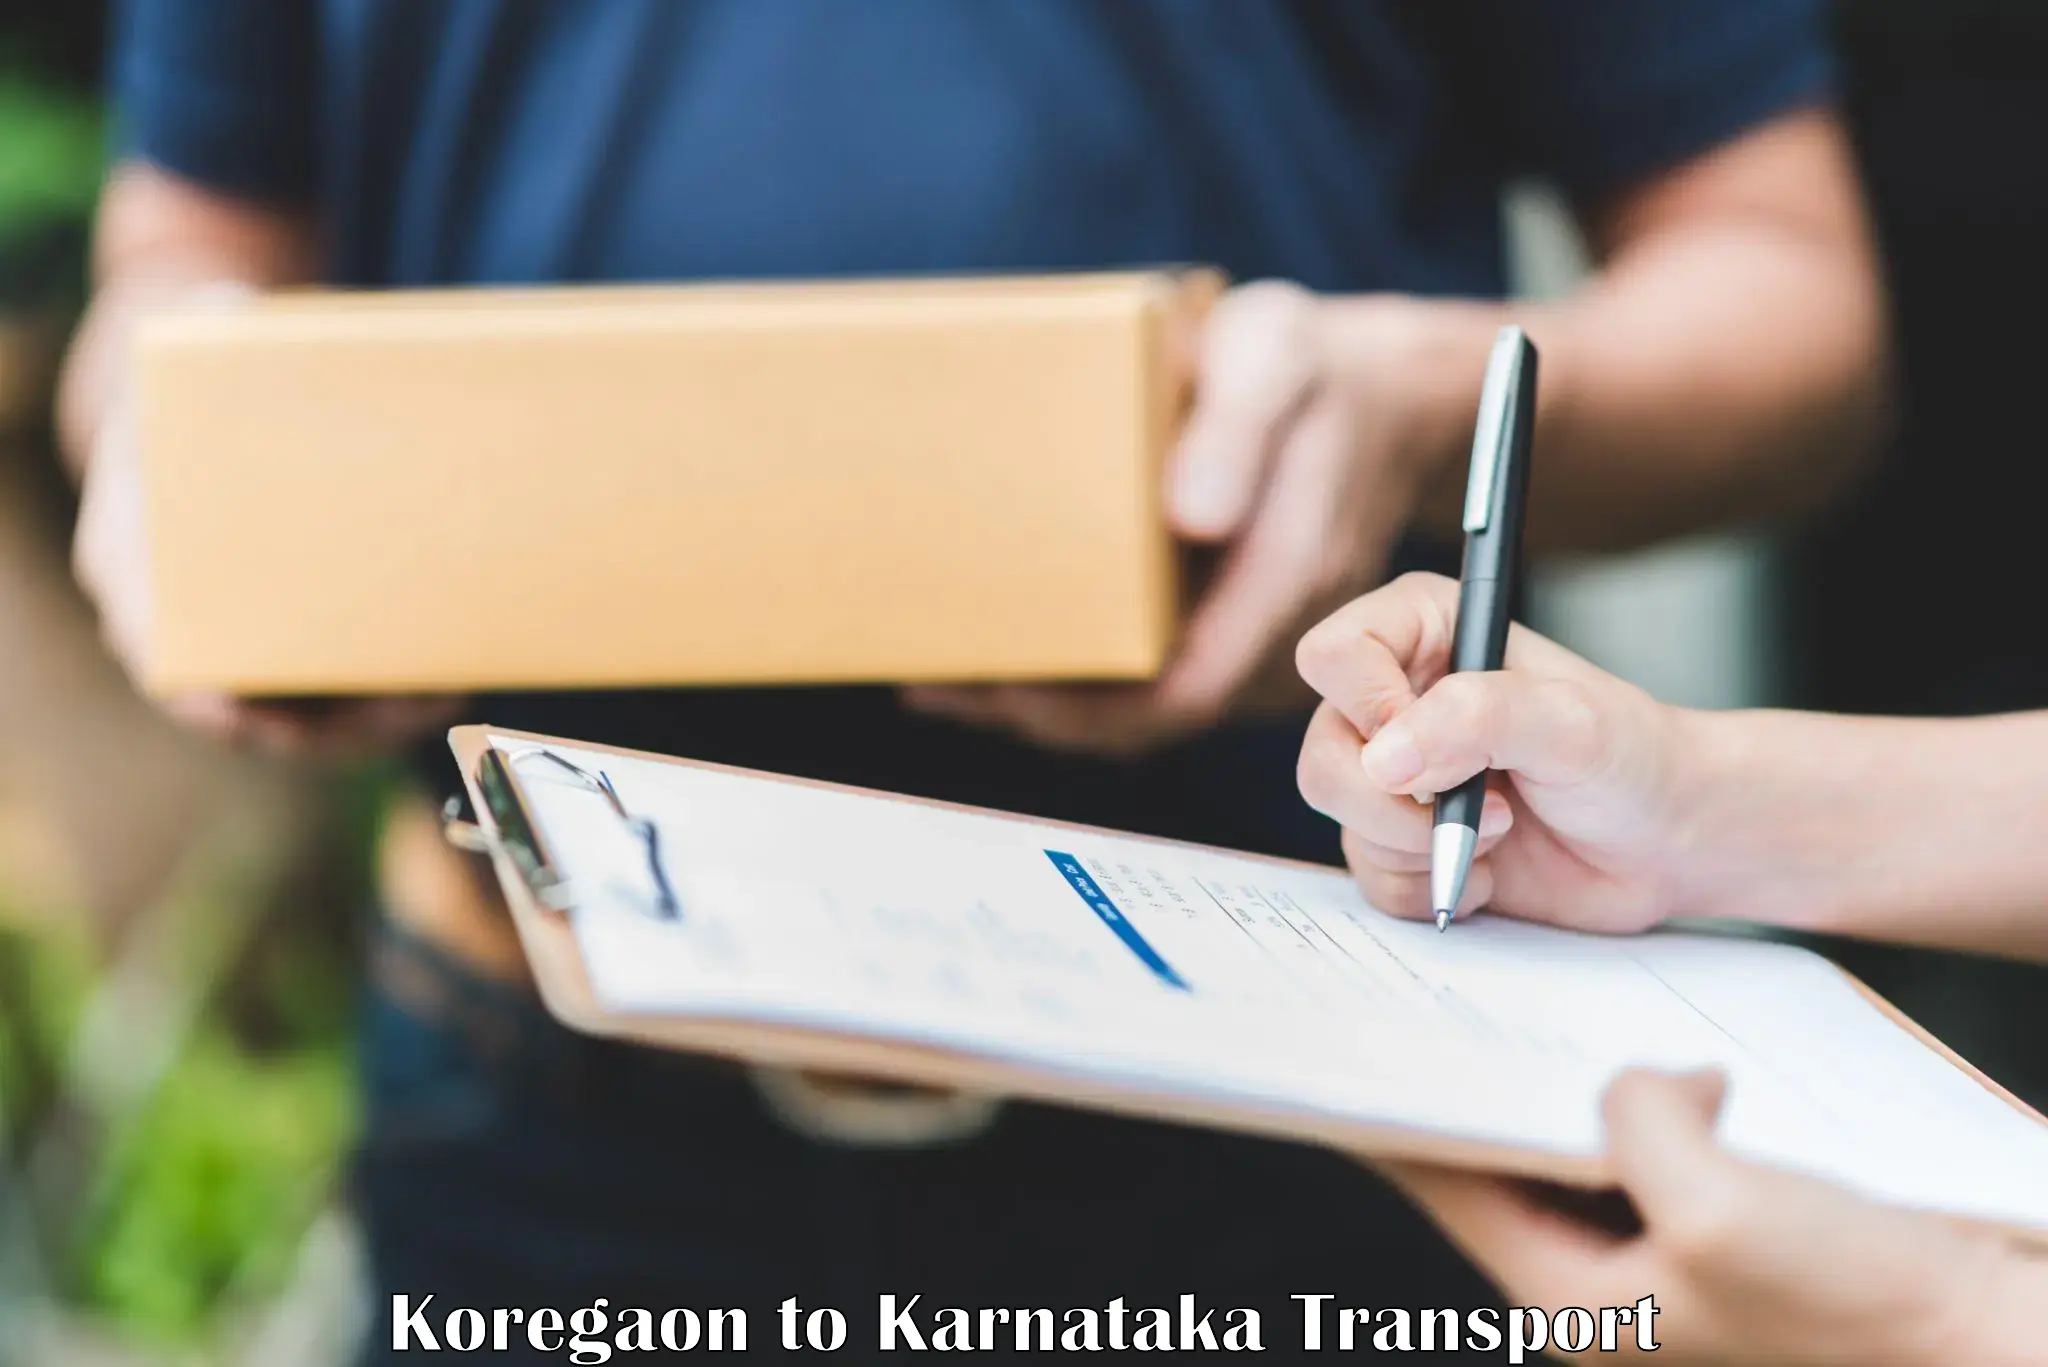 Two wheeler parcel service Koregaon to Kowthal